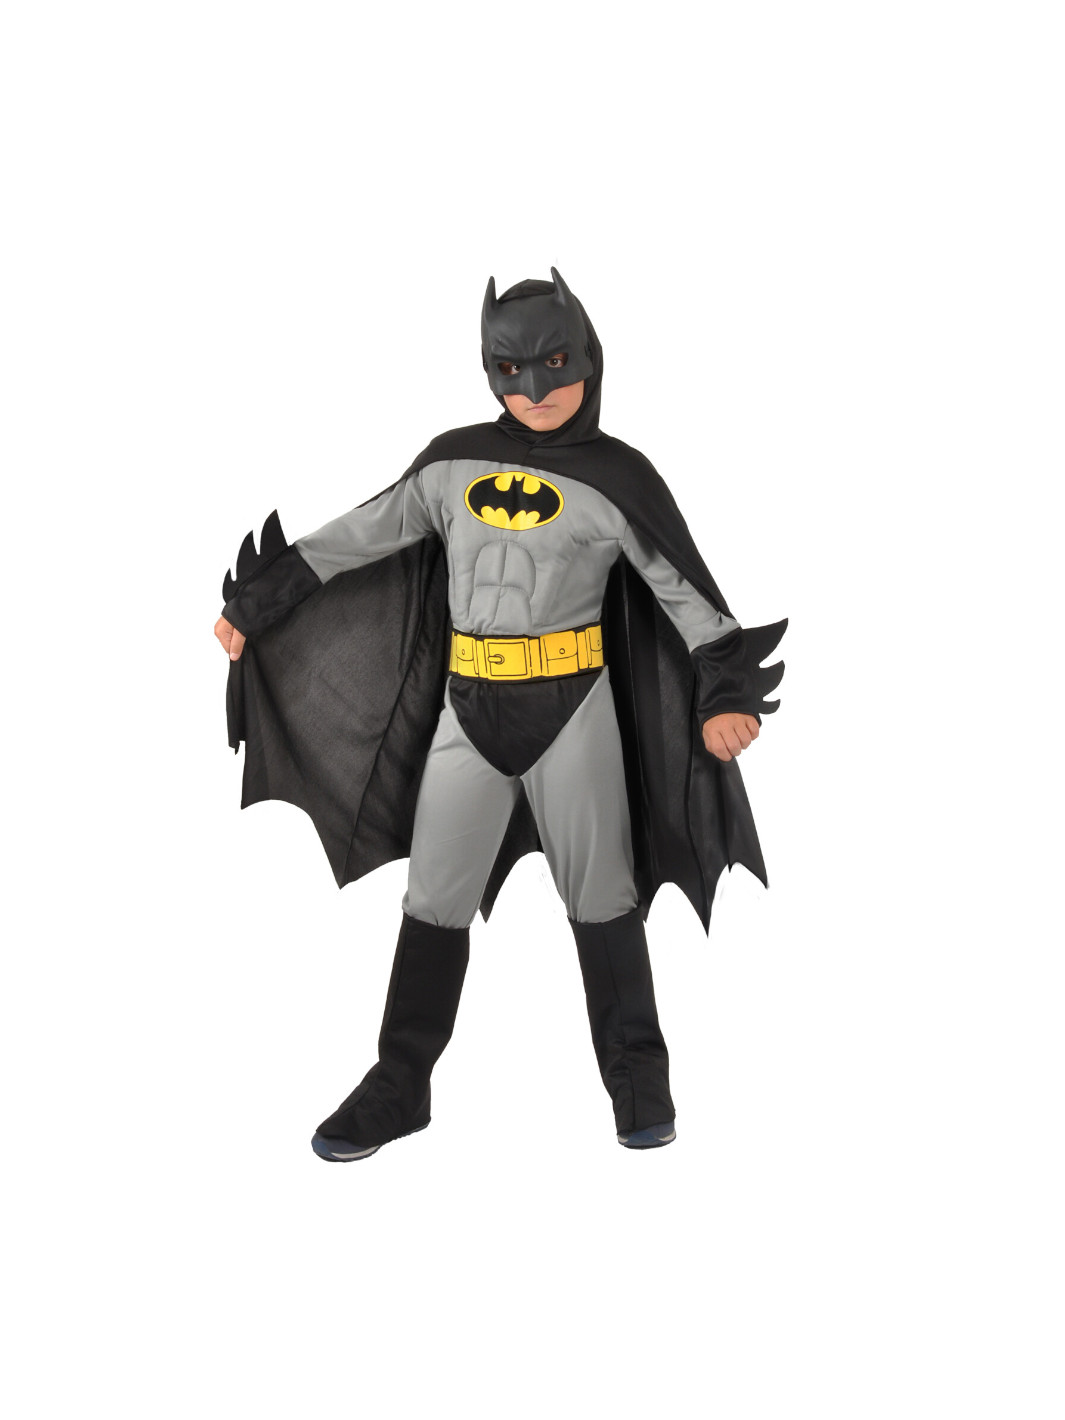 Costume completo originale di batman della warner bros disponibile in  diverse taglie - Toys Center